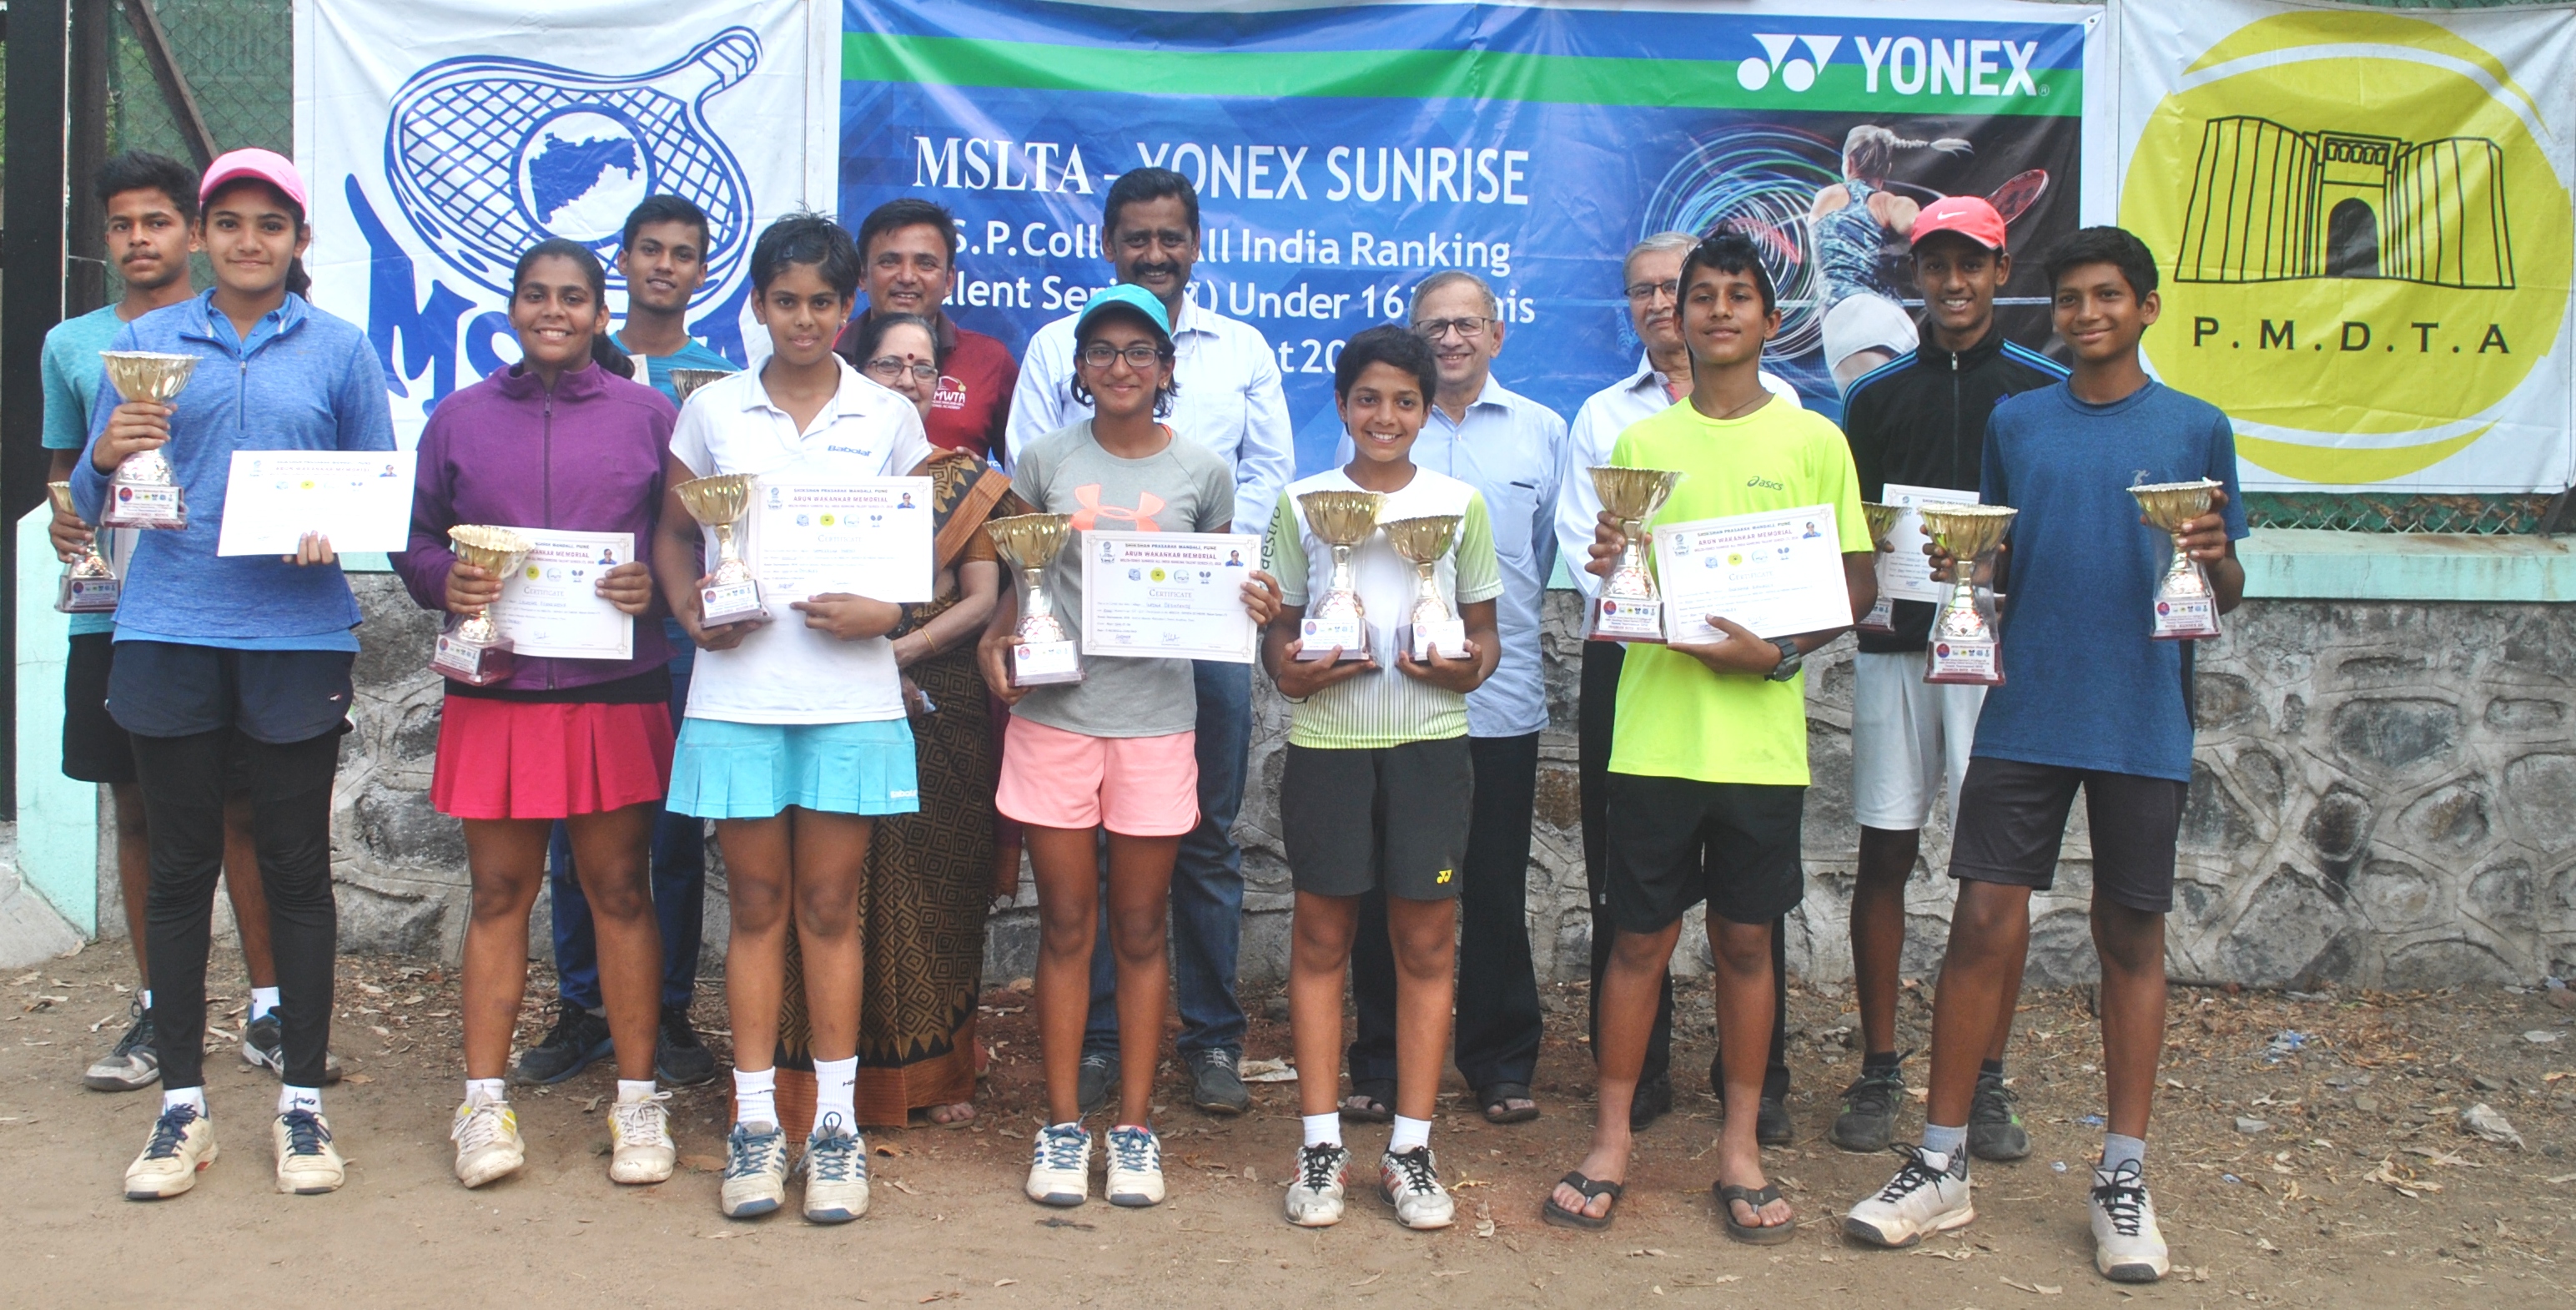 टॅलेंट सिरीज टेनिस स्पर्धेत सायना देशपांडे, यशराज दळवी यांना विजेतेपद